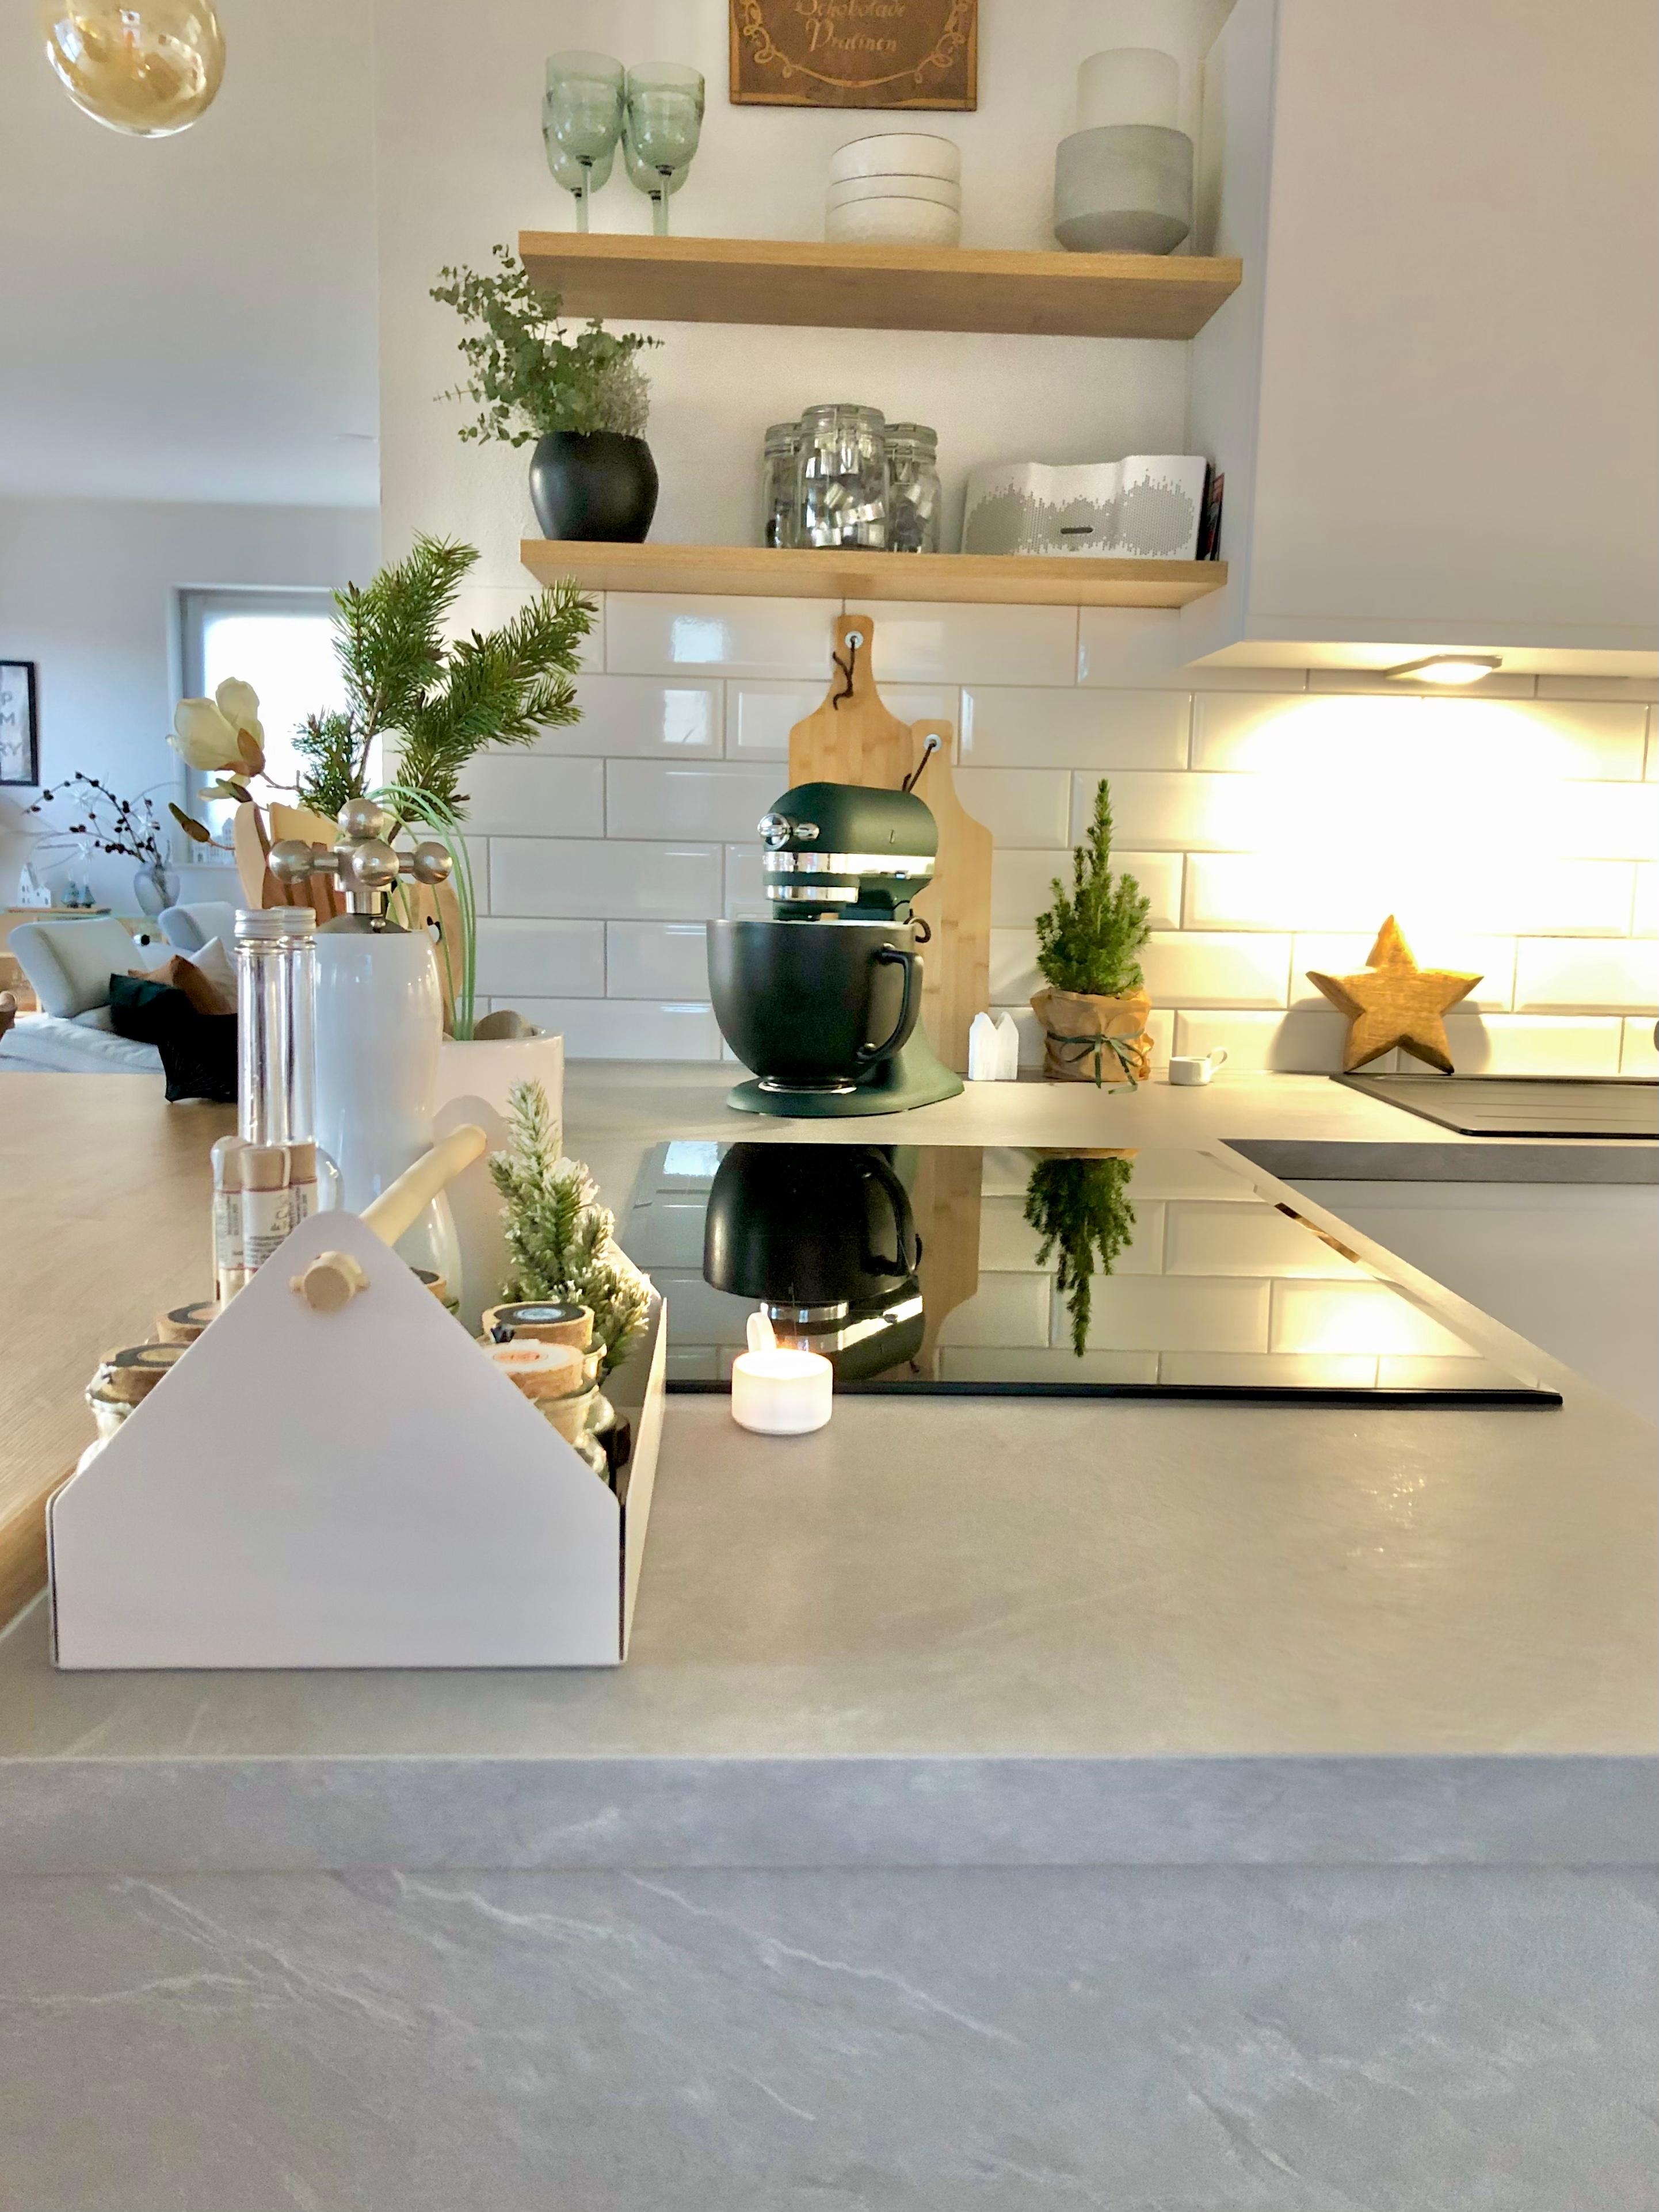 #kitchen #küche  #interiordesign #hyggehome #scandikitchen